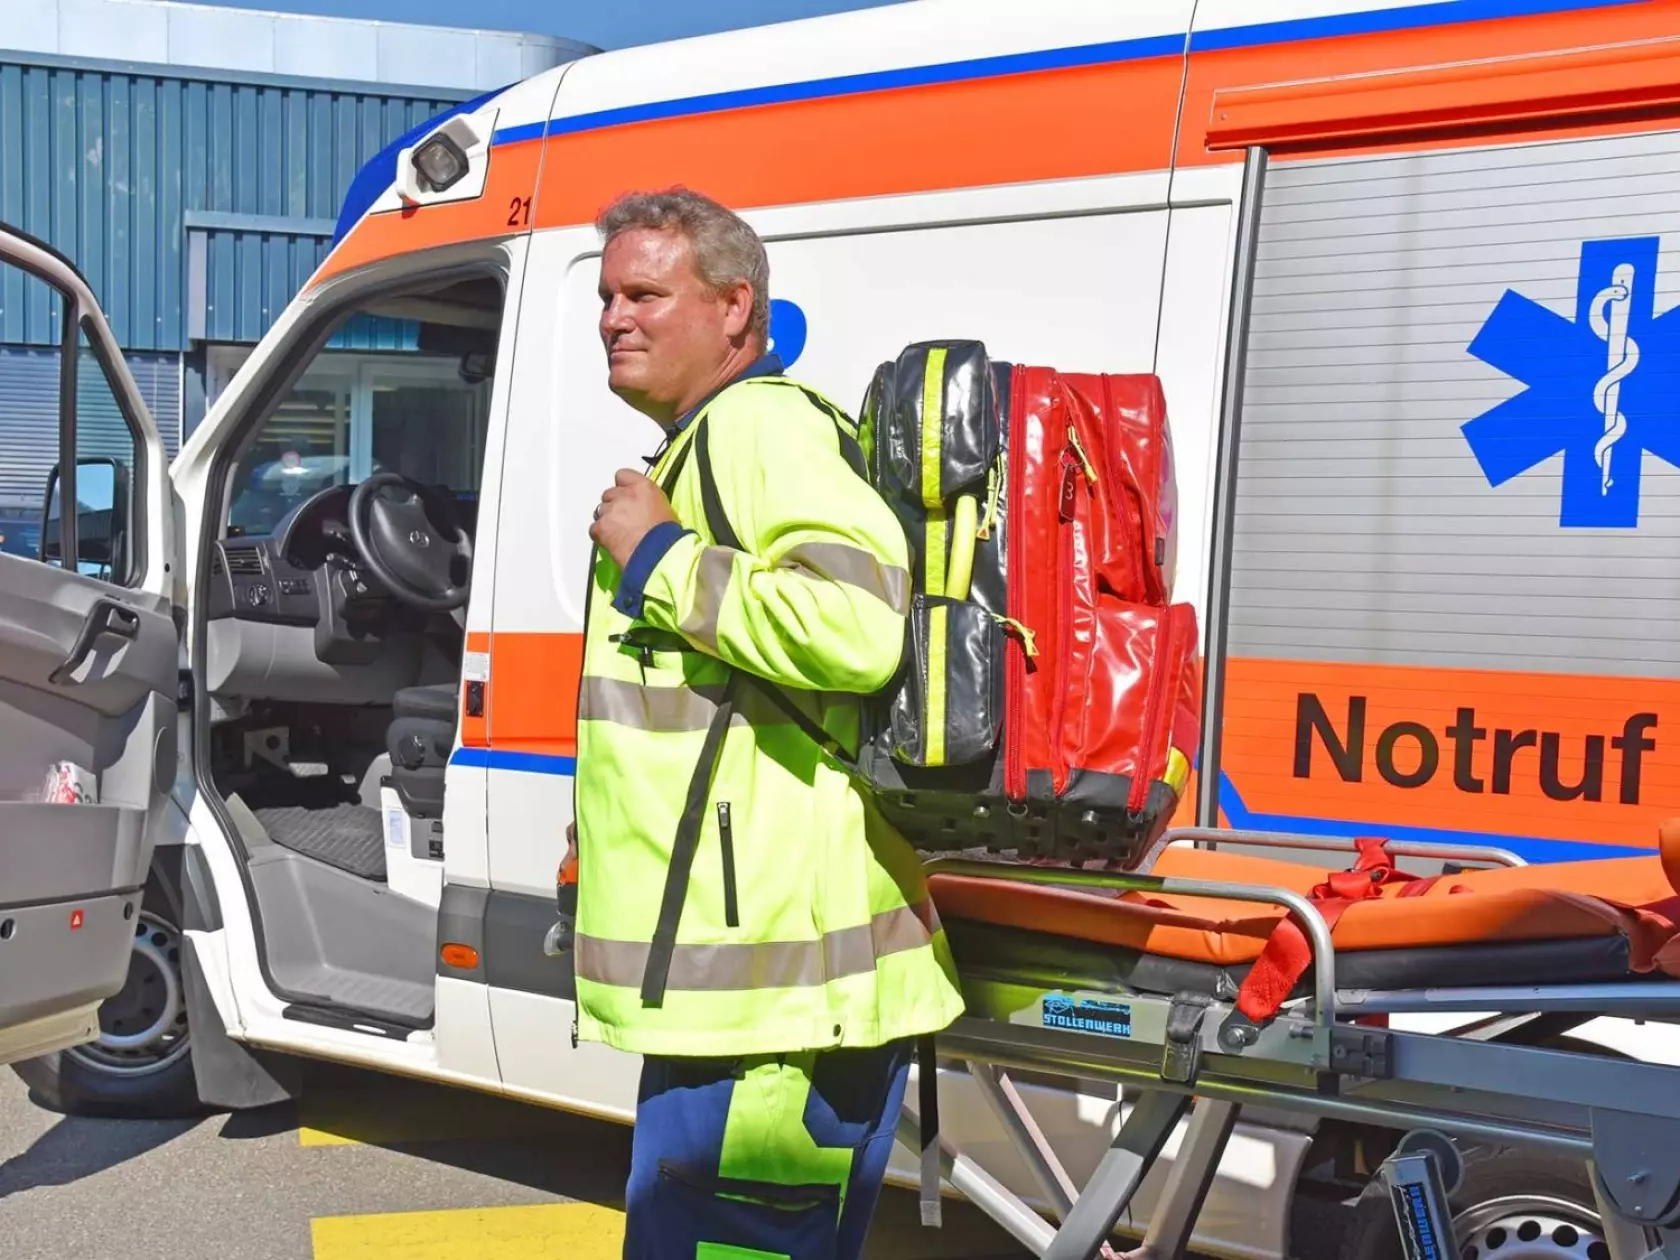 Rettungssanitäter Lukas Frey mit seinen Arbeitsutensilien vor dem Ambulanzfahrzeug